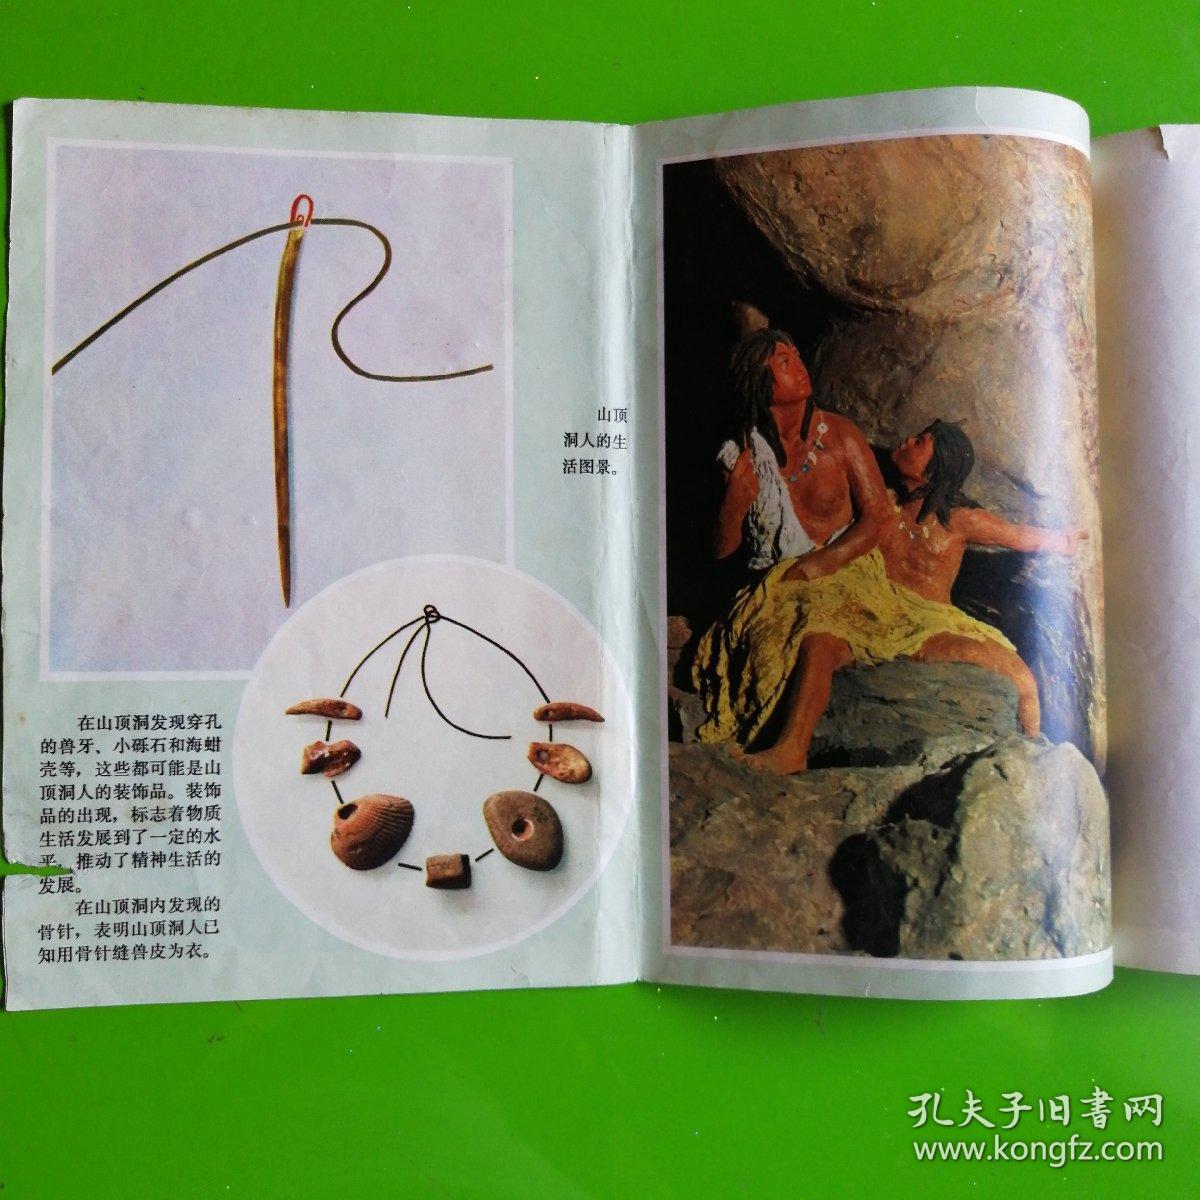 【新闻图片】《北京猿人之家》（全9张）（新闻展览照片农村普及版）1973年5月初版